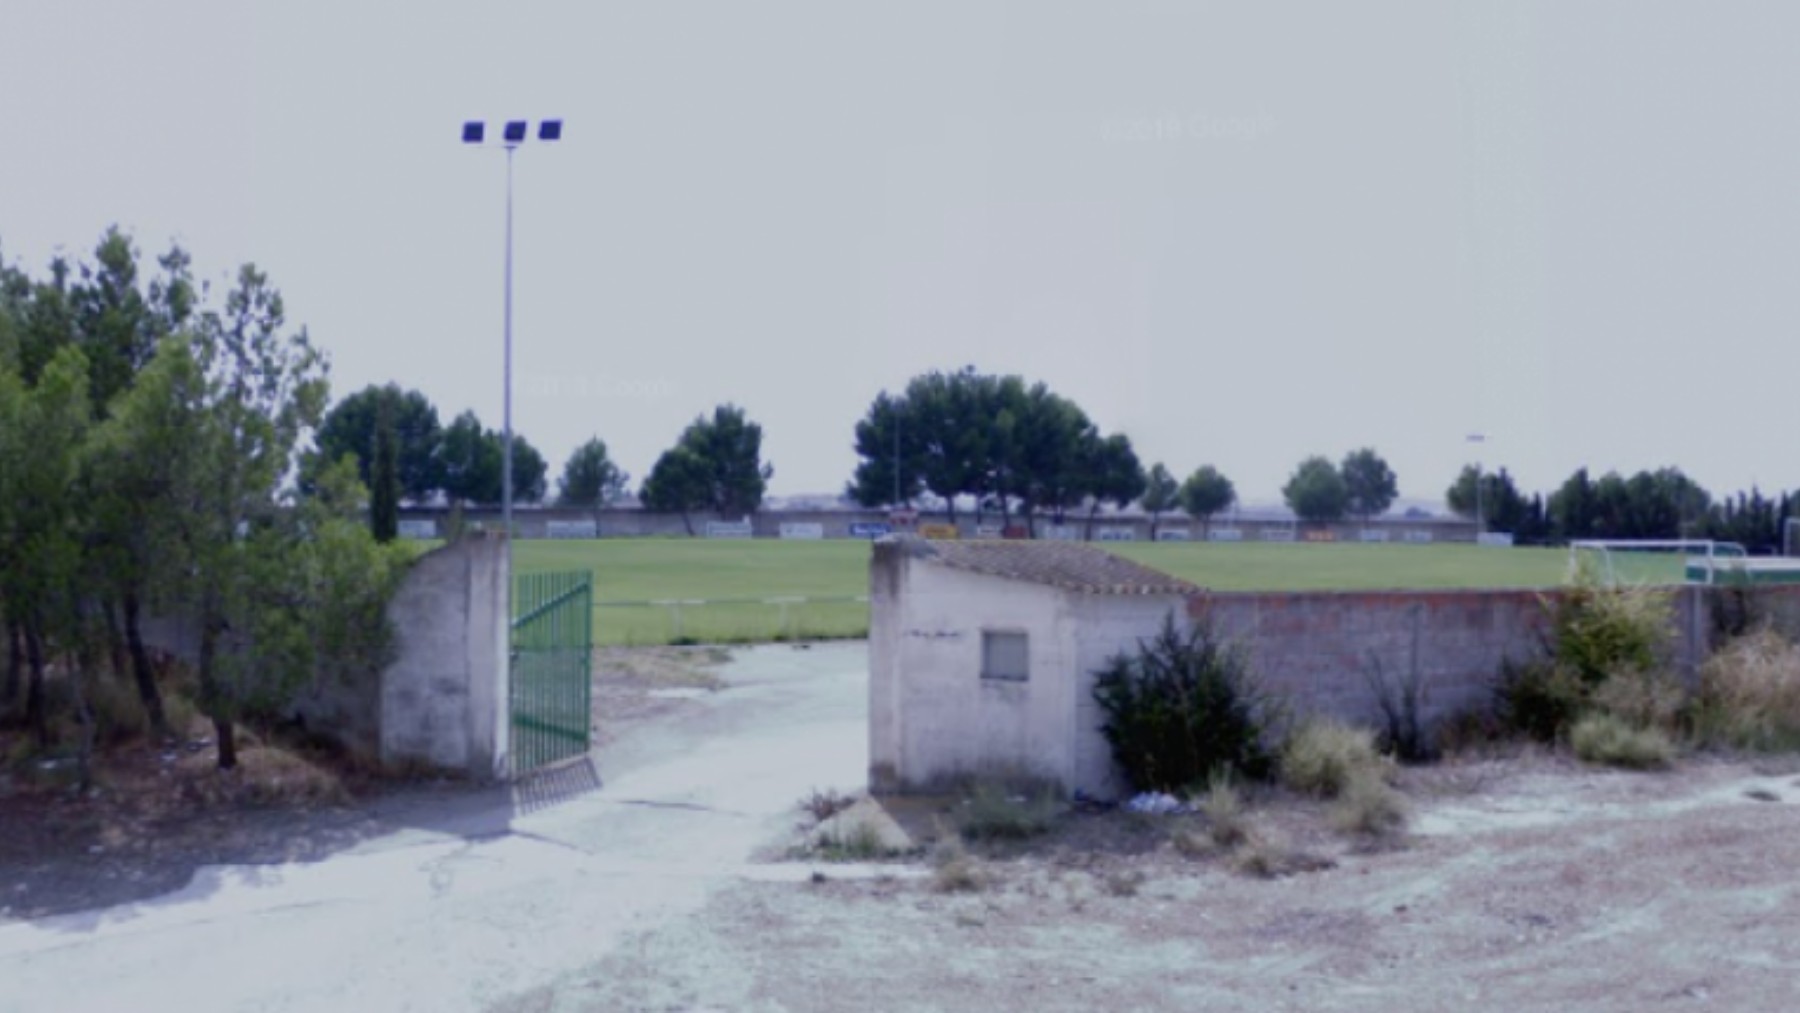 El campo de fútbol donde sucedieron los hechos. (Google Maps)